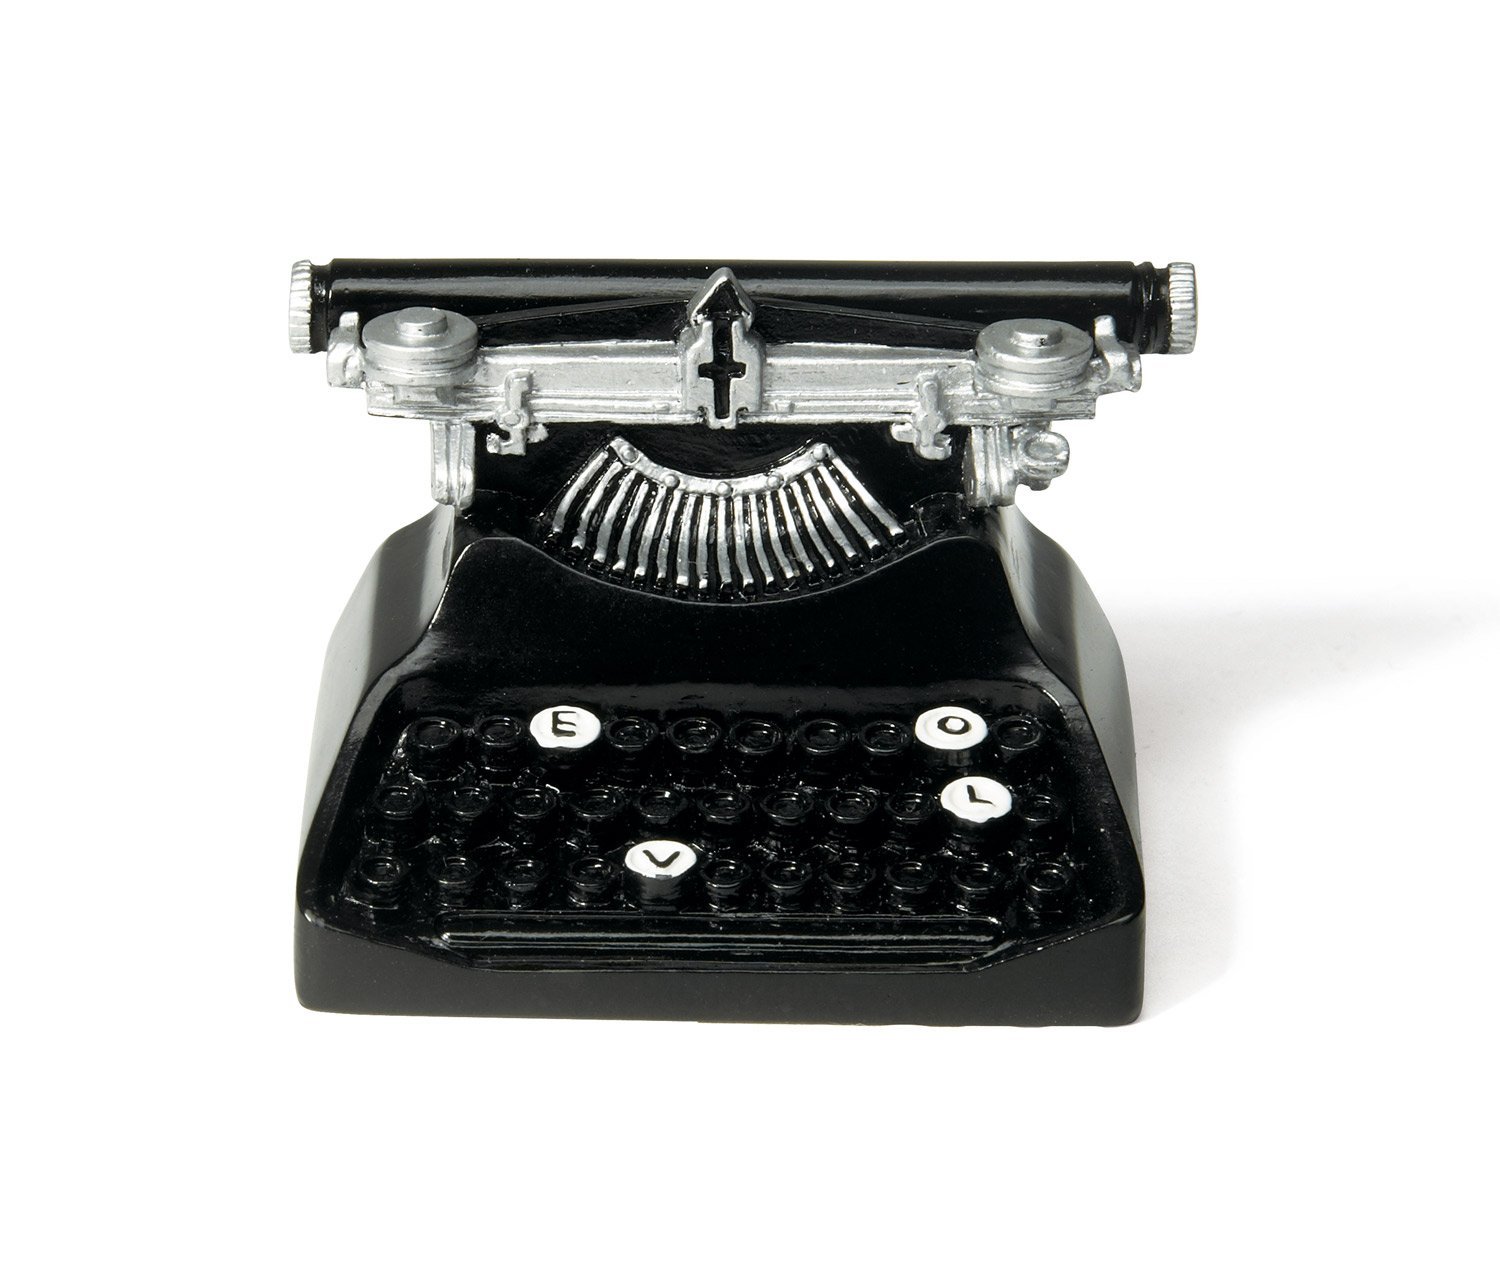 Amazon.com: Weddingstar Vintage Typewriter Card Holder: Kitchen & Dining